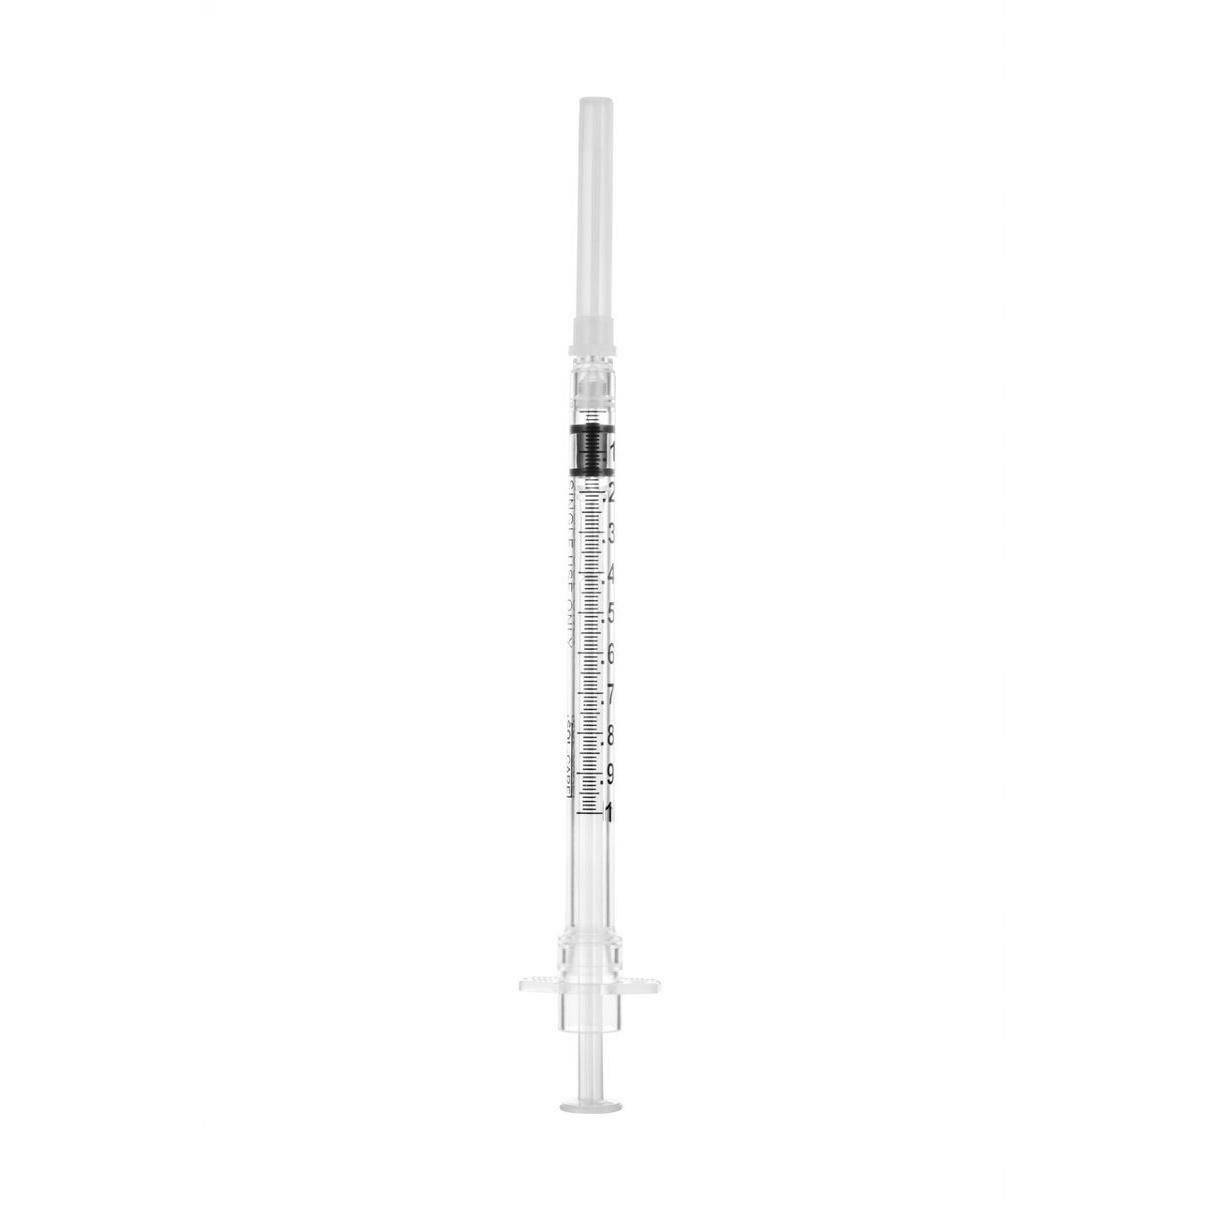 1ml 25g 5/8 inch Sol-Care Safety Syringe with Fixed Needle - UKMEDI